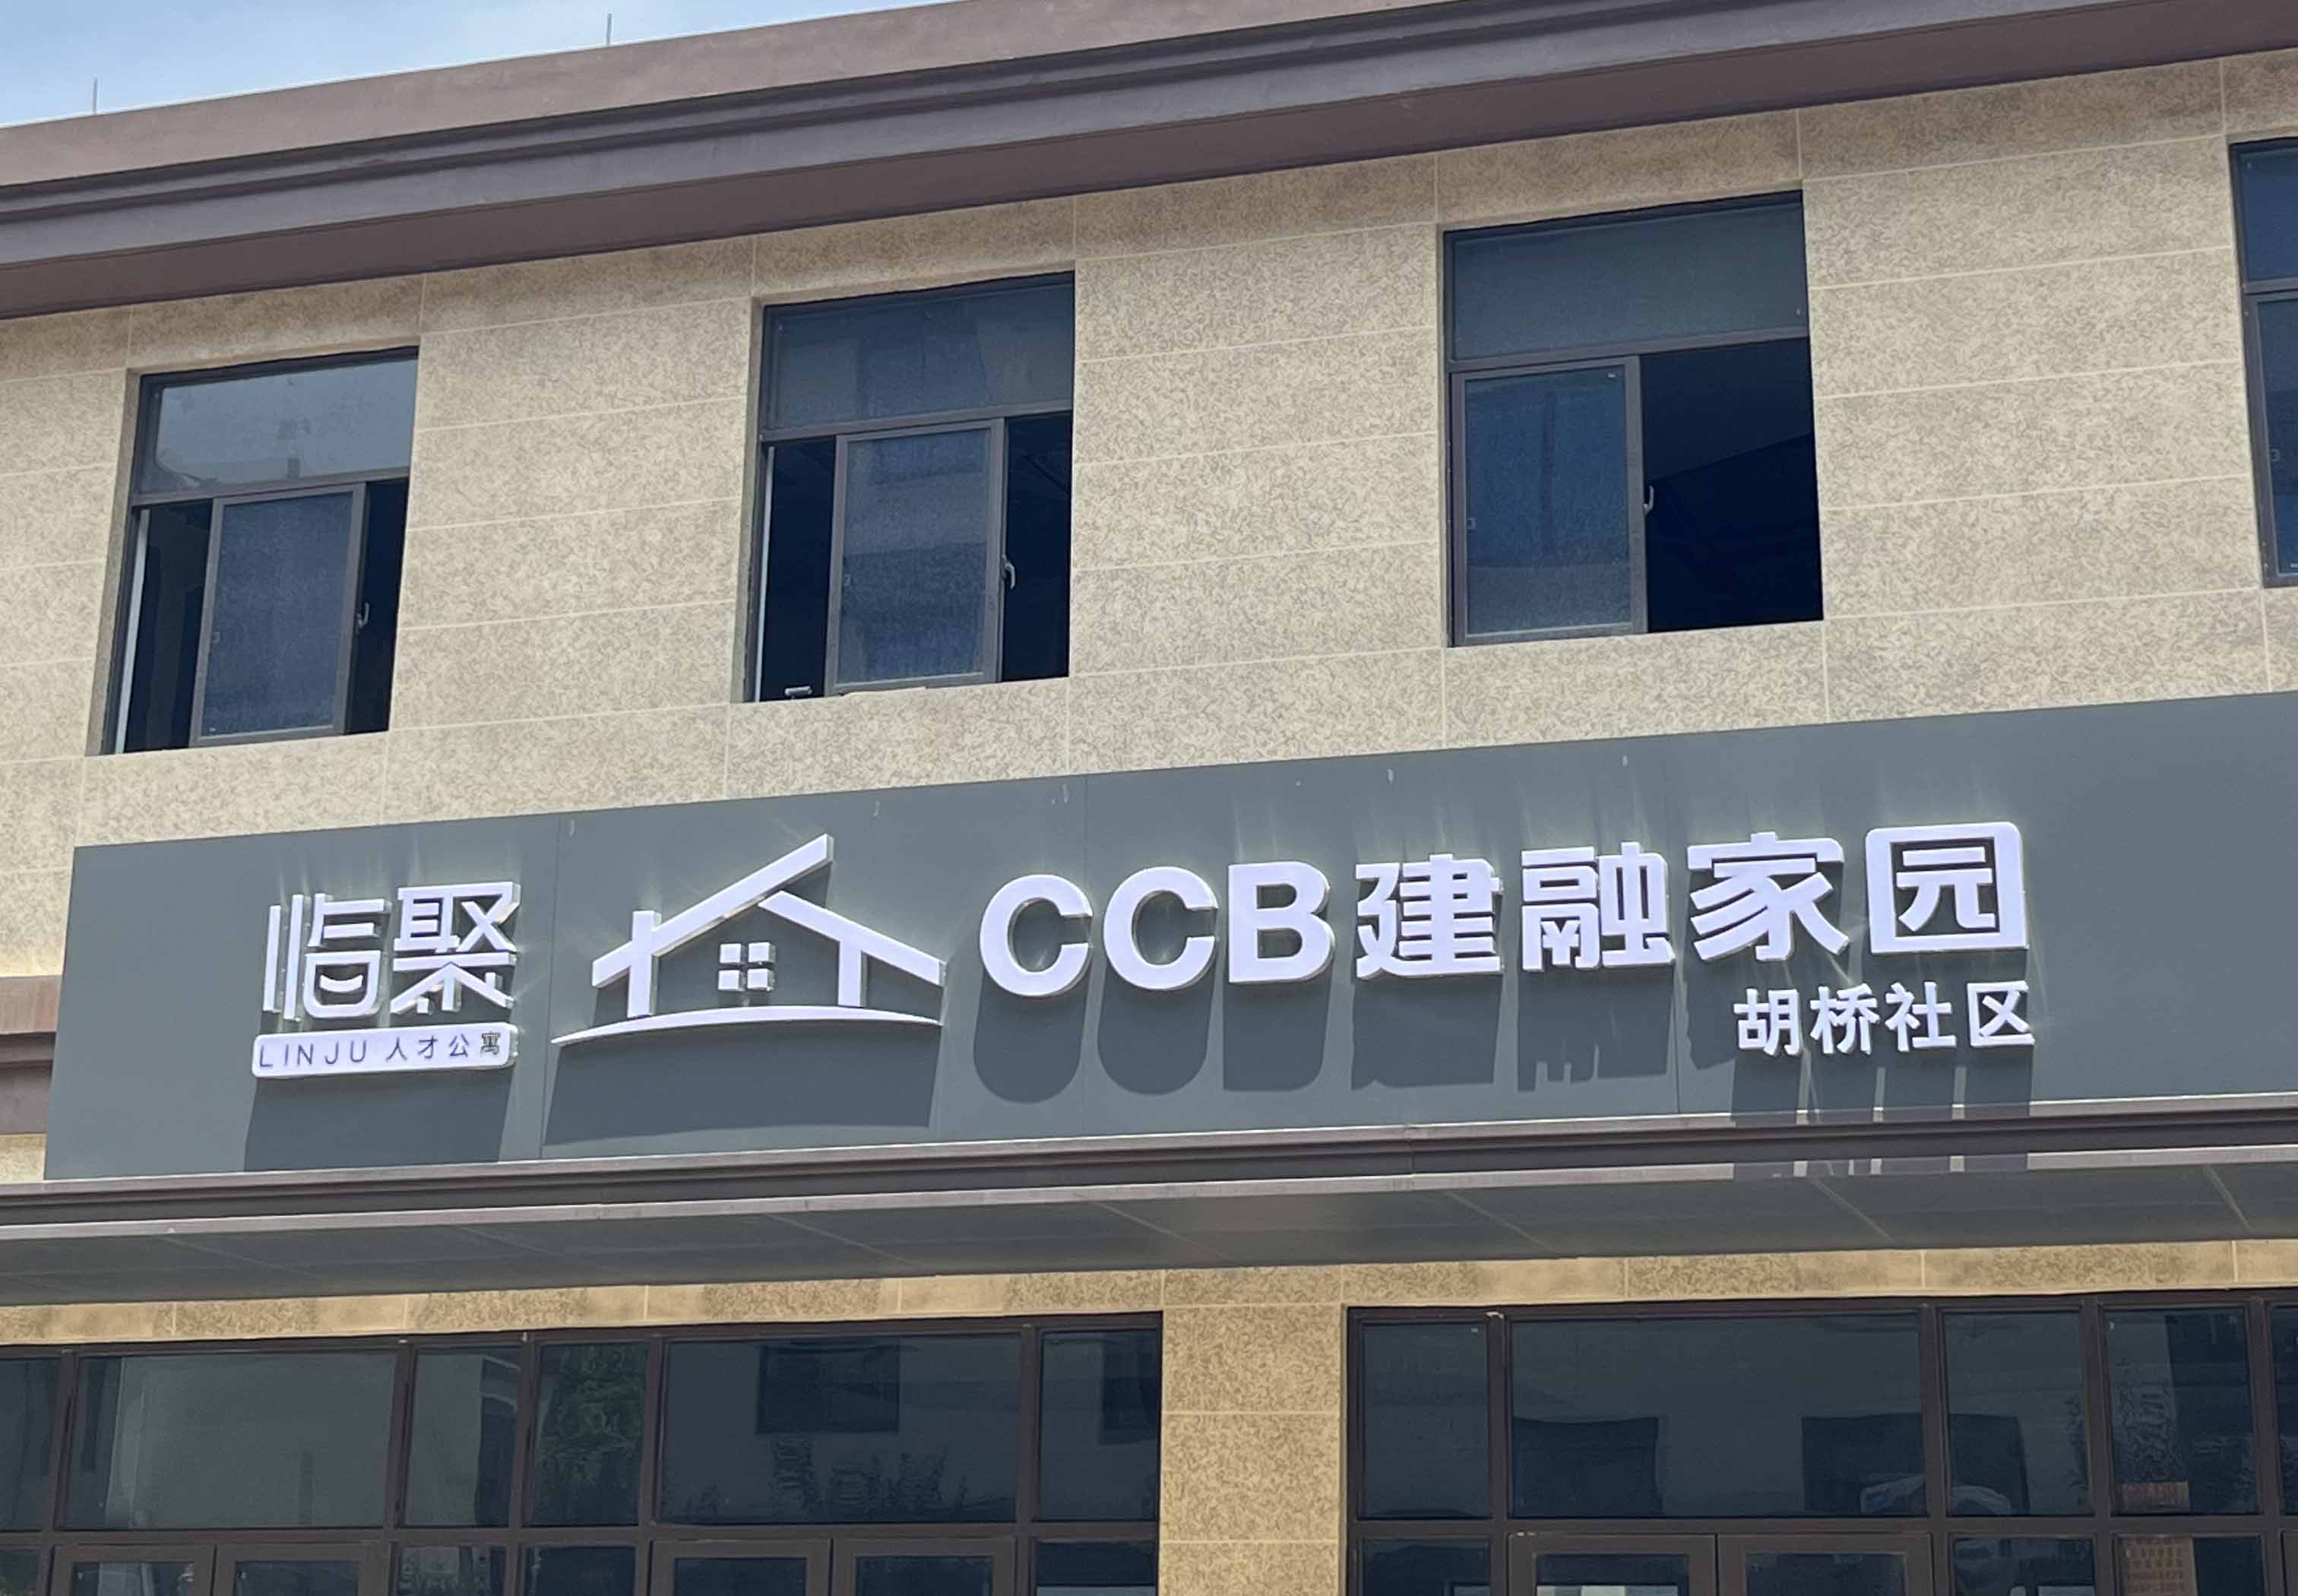 租赁住房模式新探索 | 全民认证智能门锁为杭州胡桥社区管理赋能